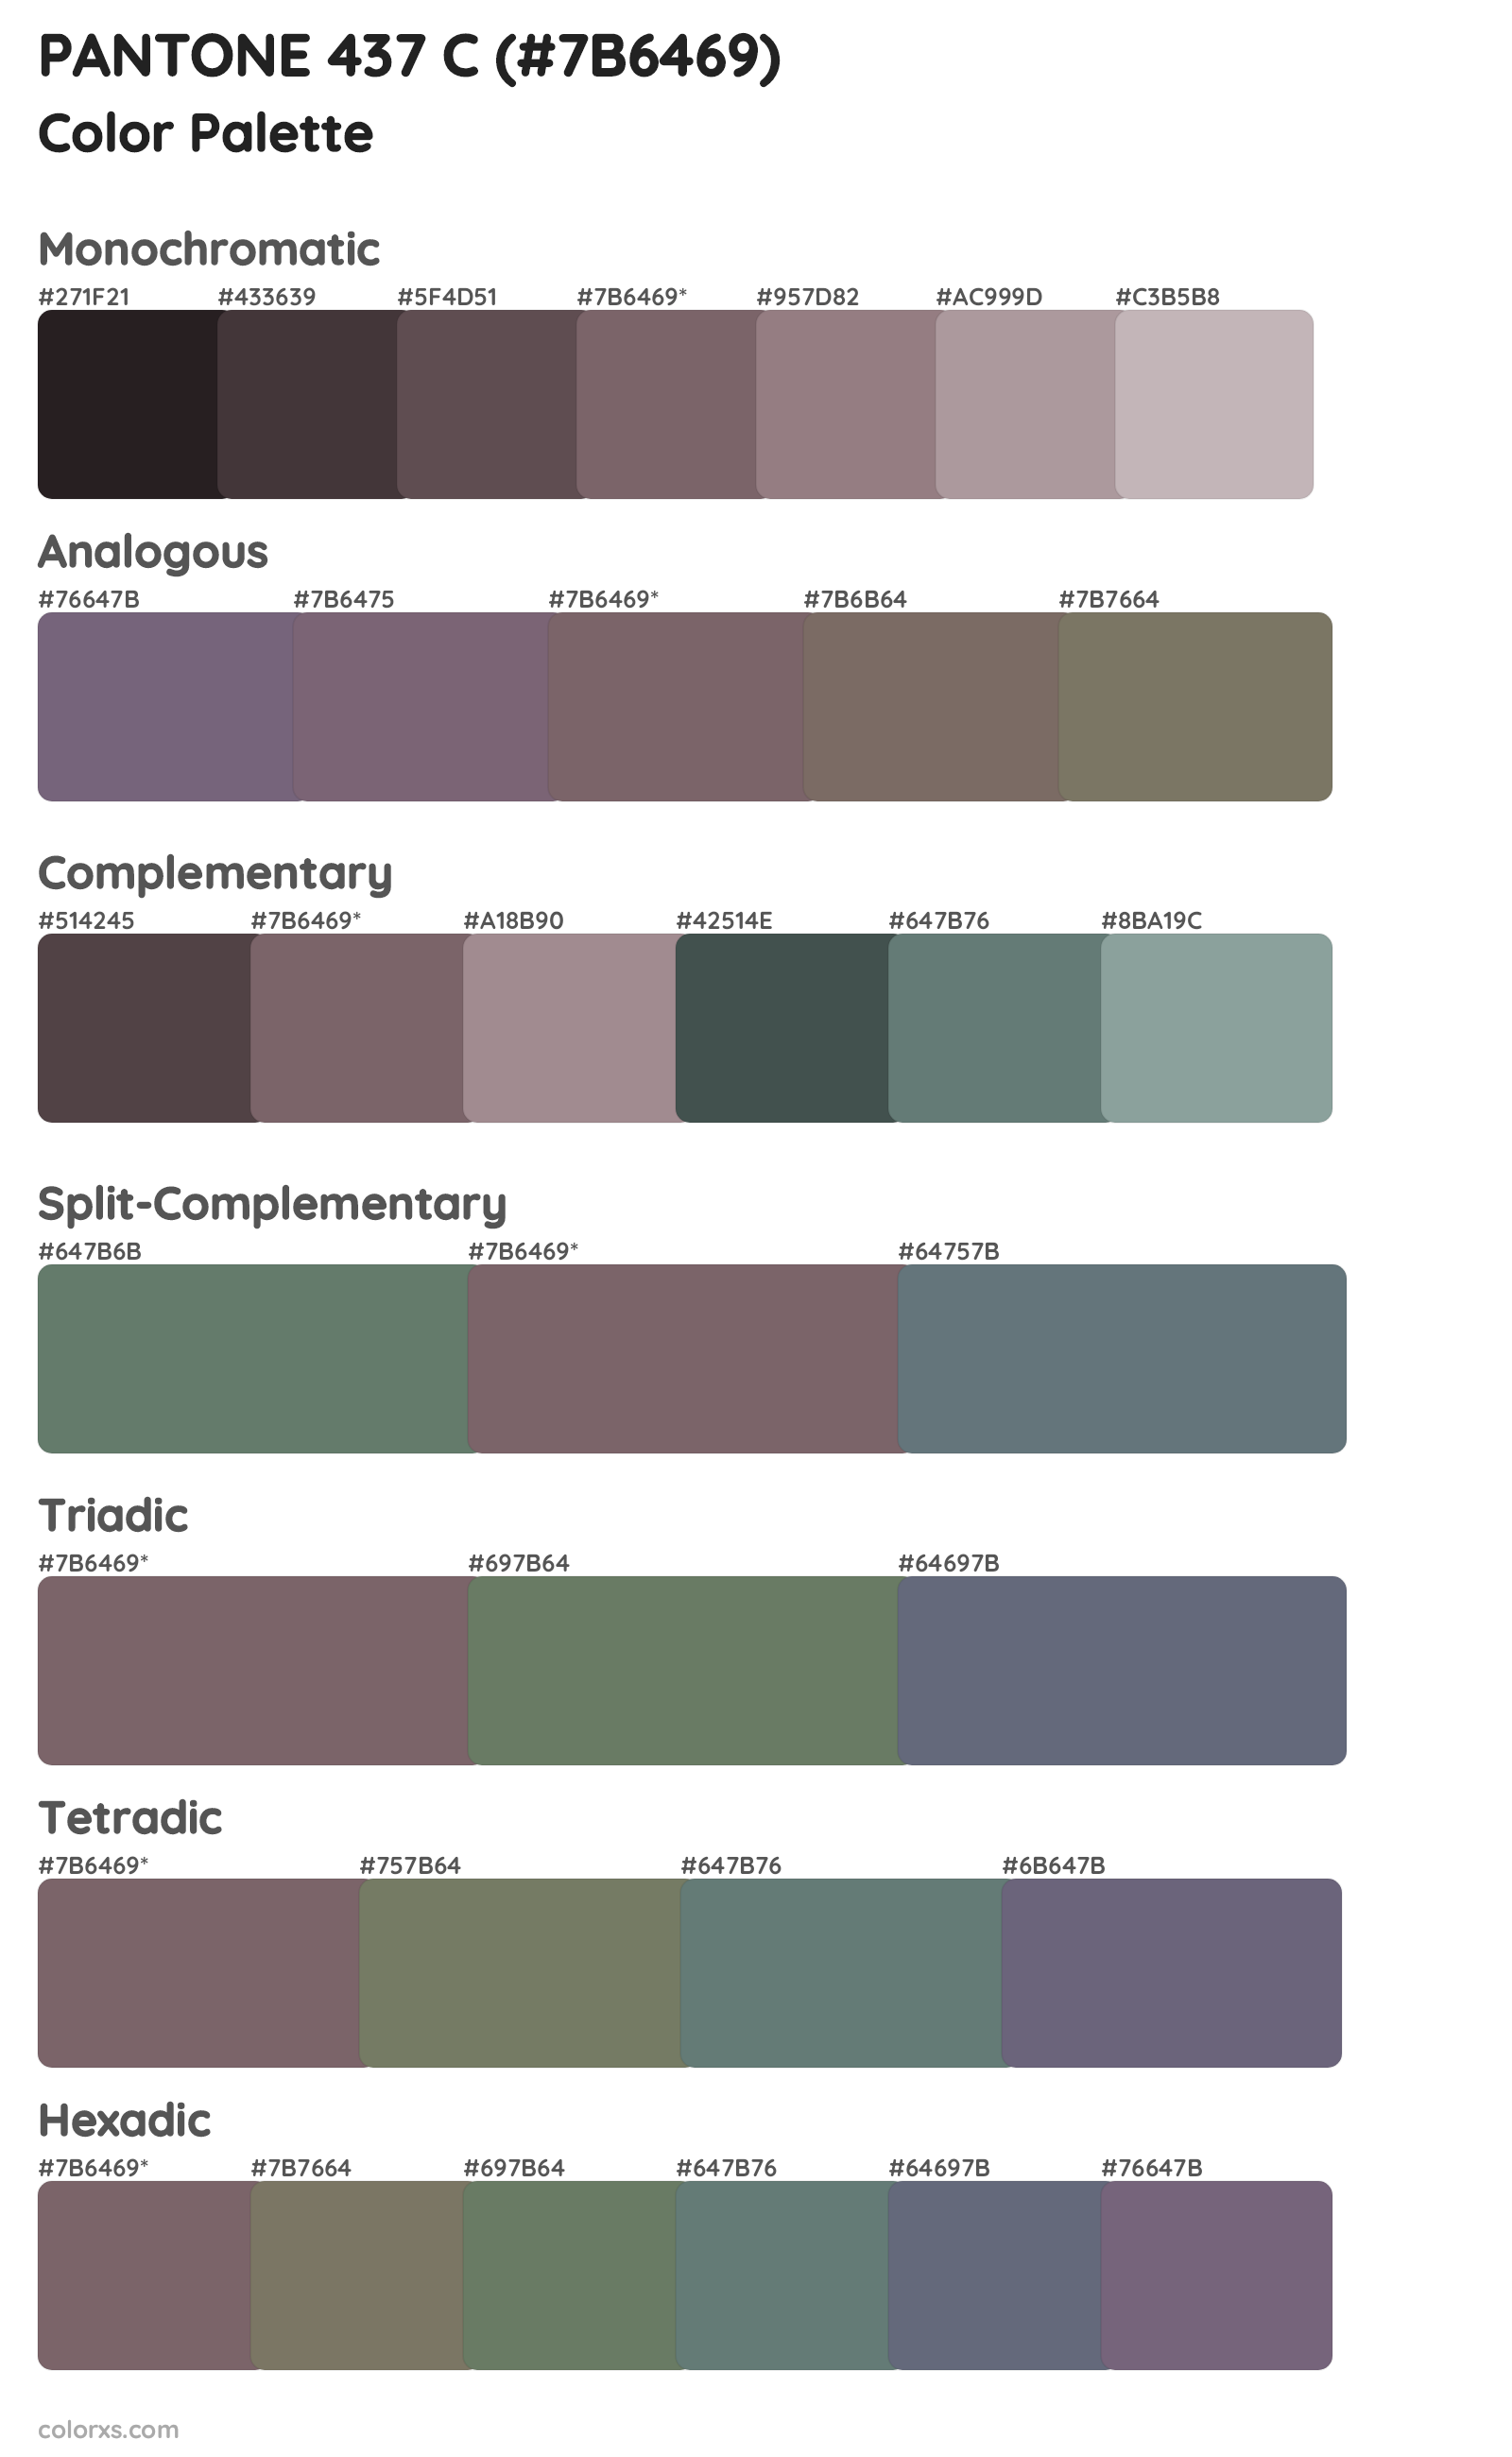 PANTONE 437 C Color Scheme Palettes